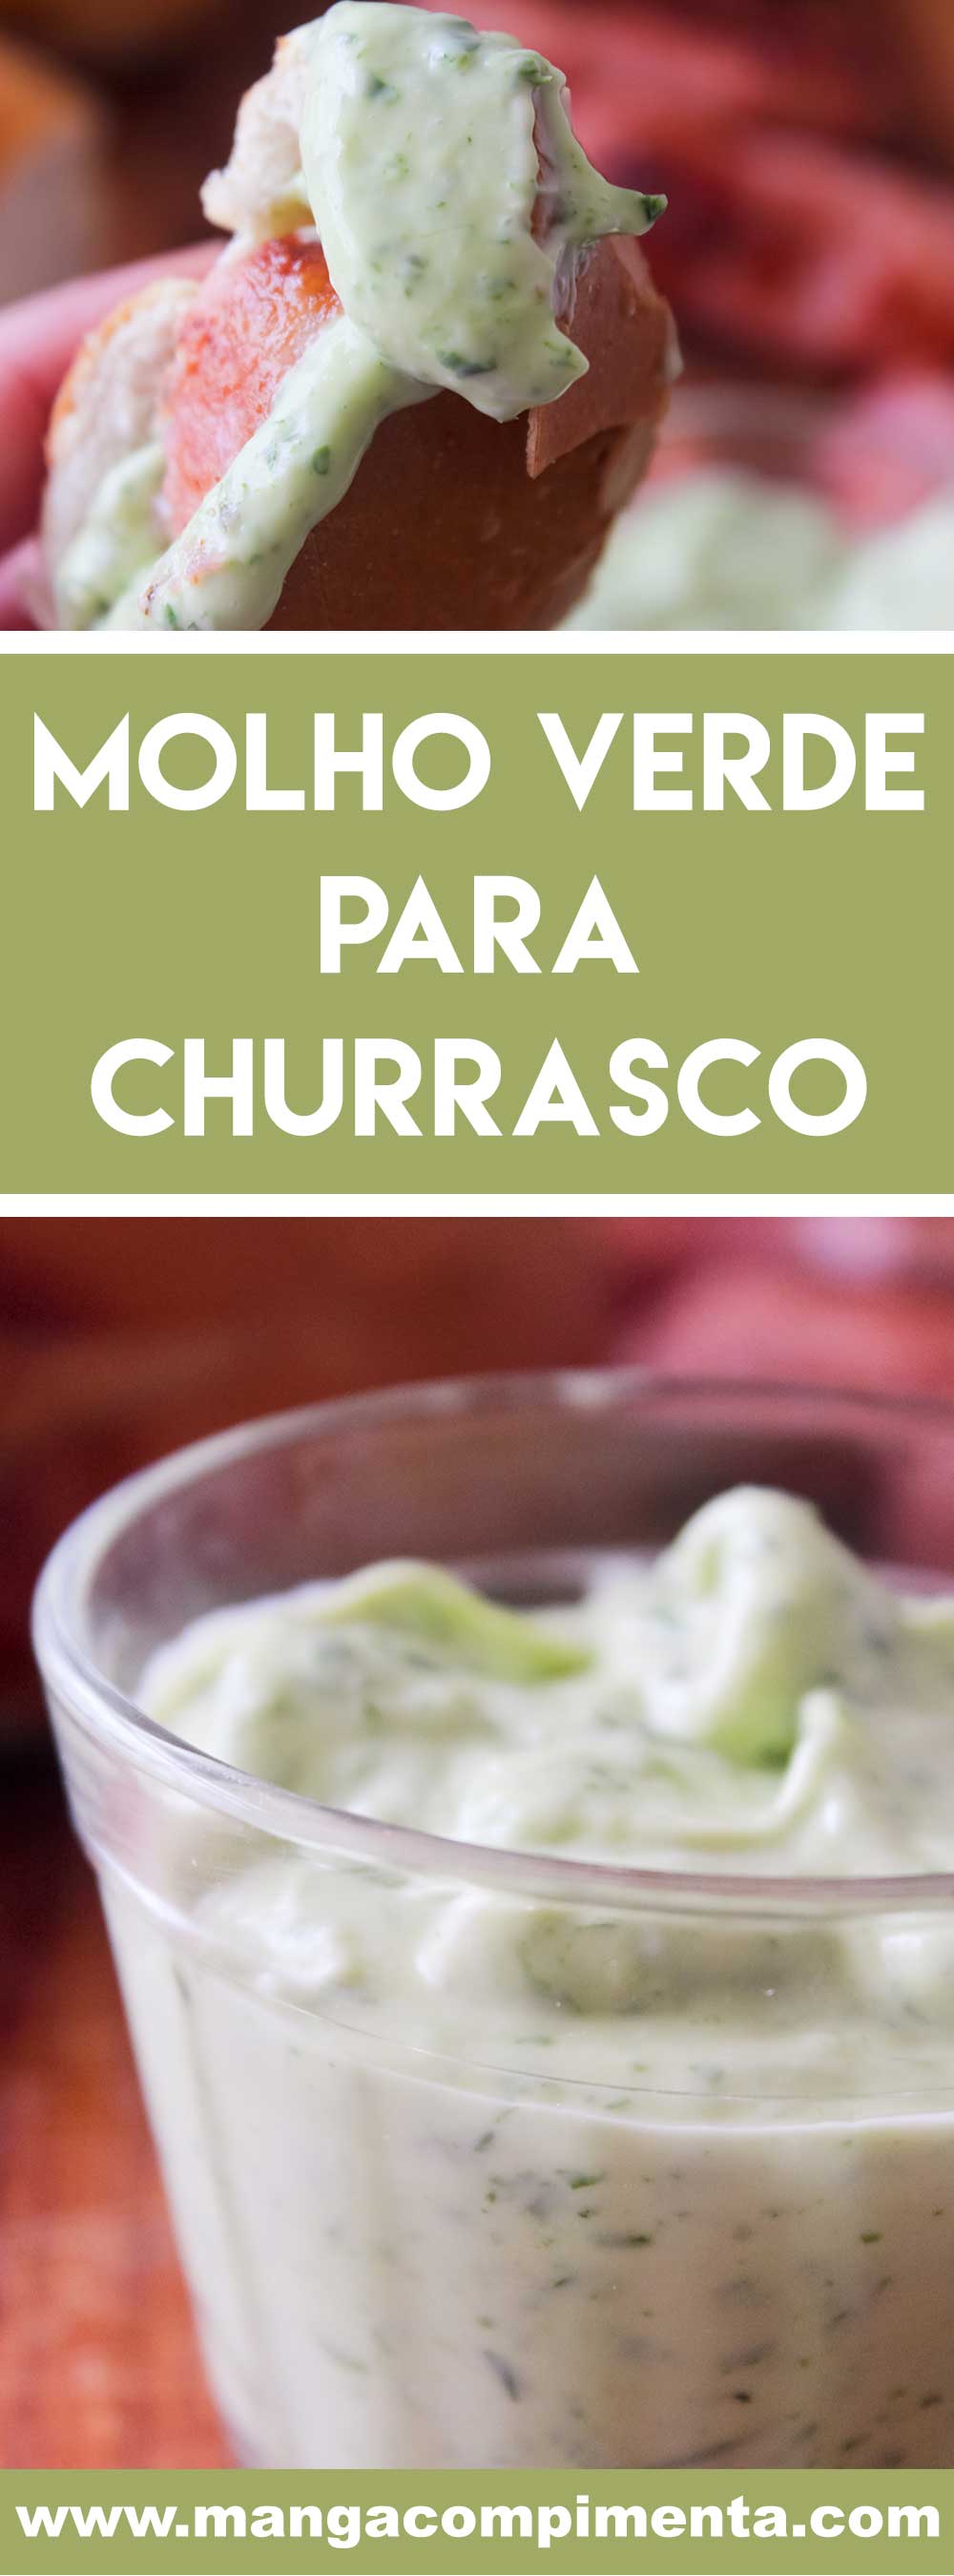 Receita de Molho Verde para Churrasco - aproveite o final de semana de churrasco com os amigos para servir bem!